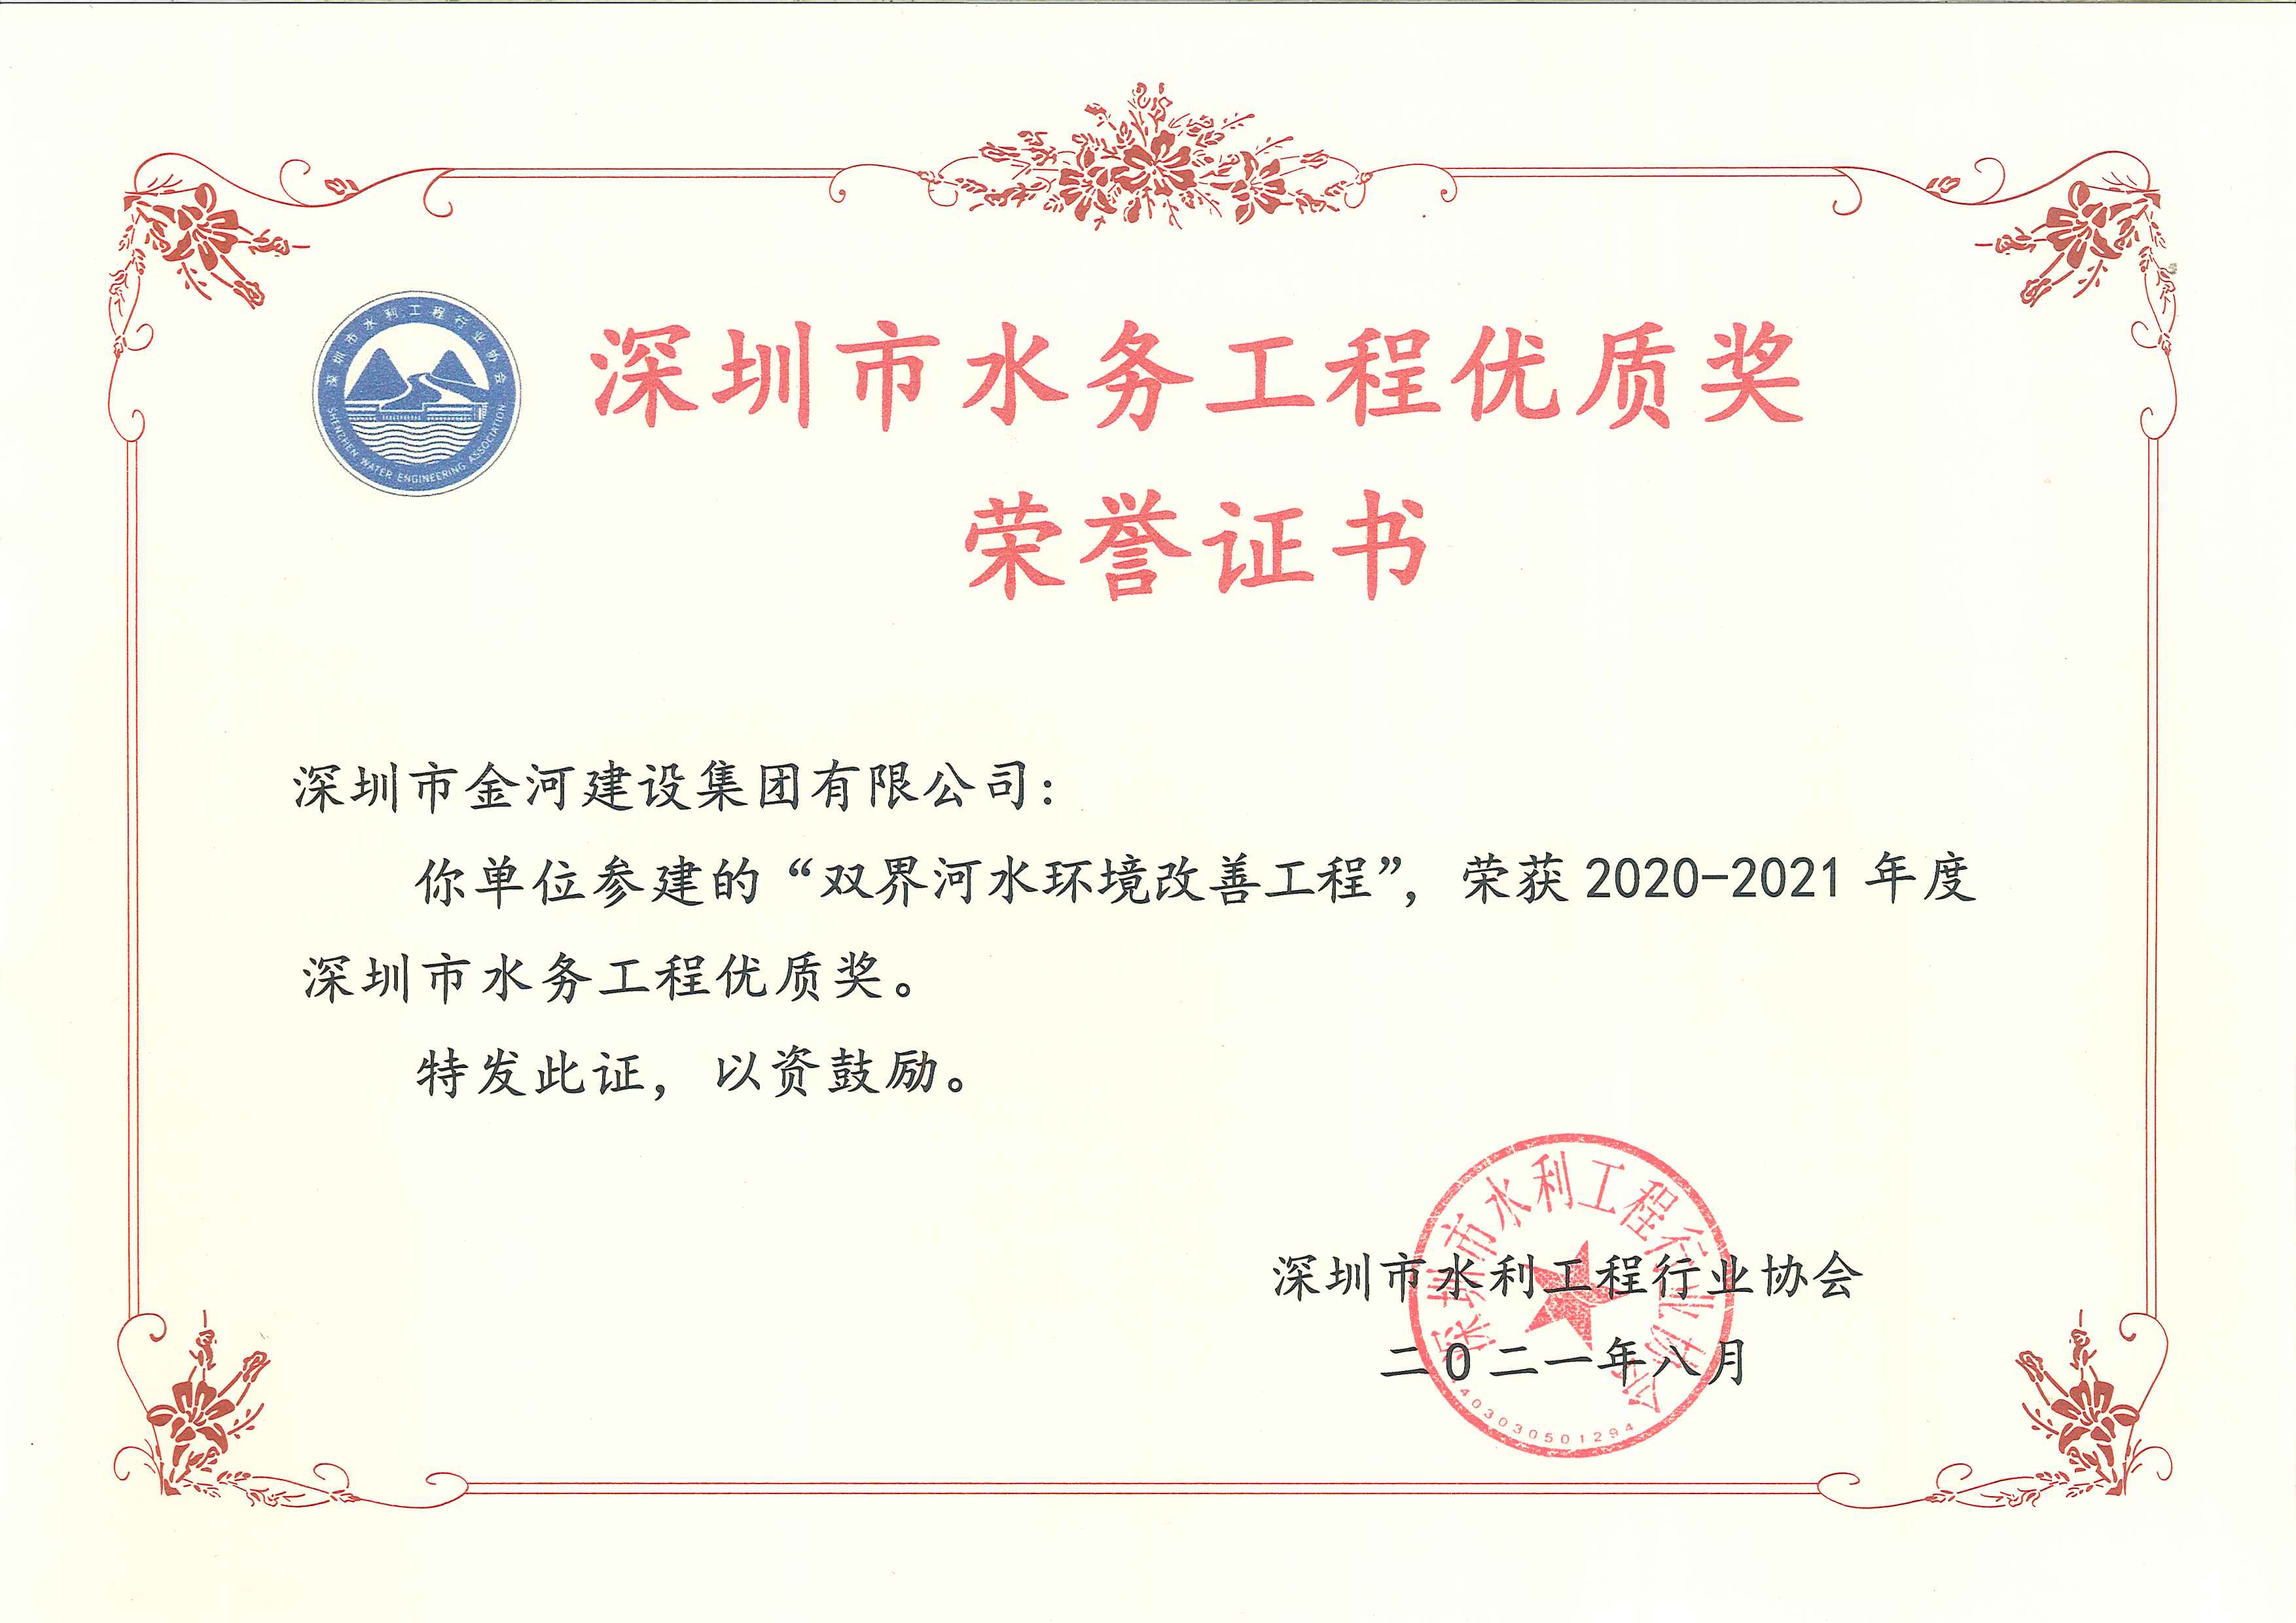 2020-2021年度深圳市水务工程优质奖（双界河水环境改善工程）